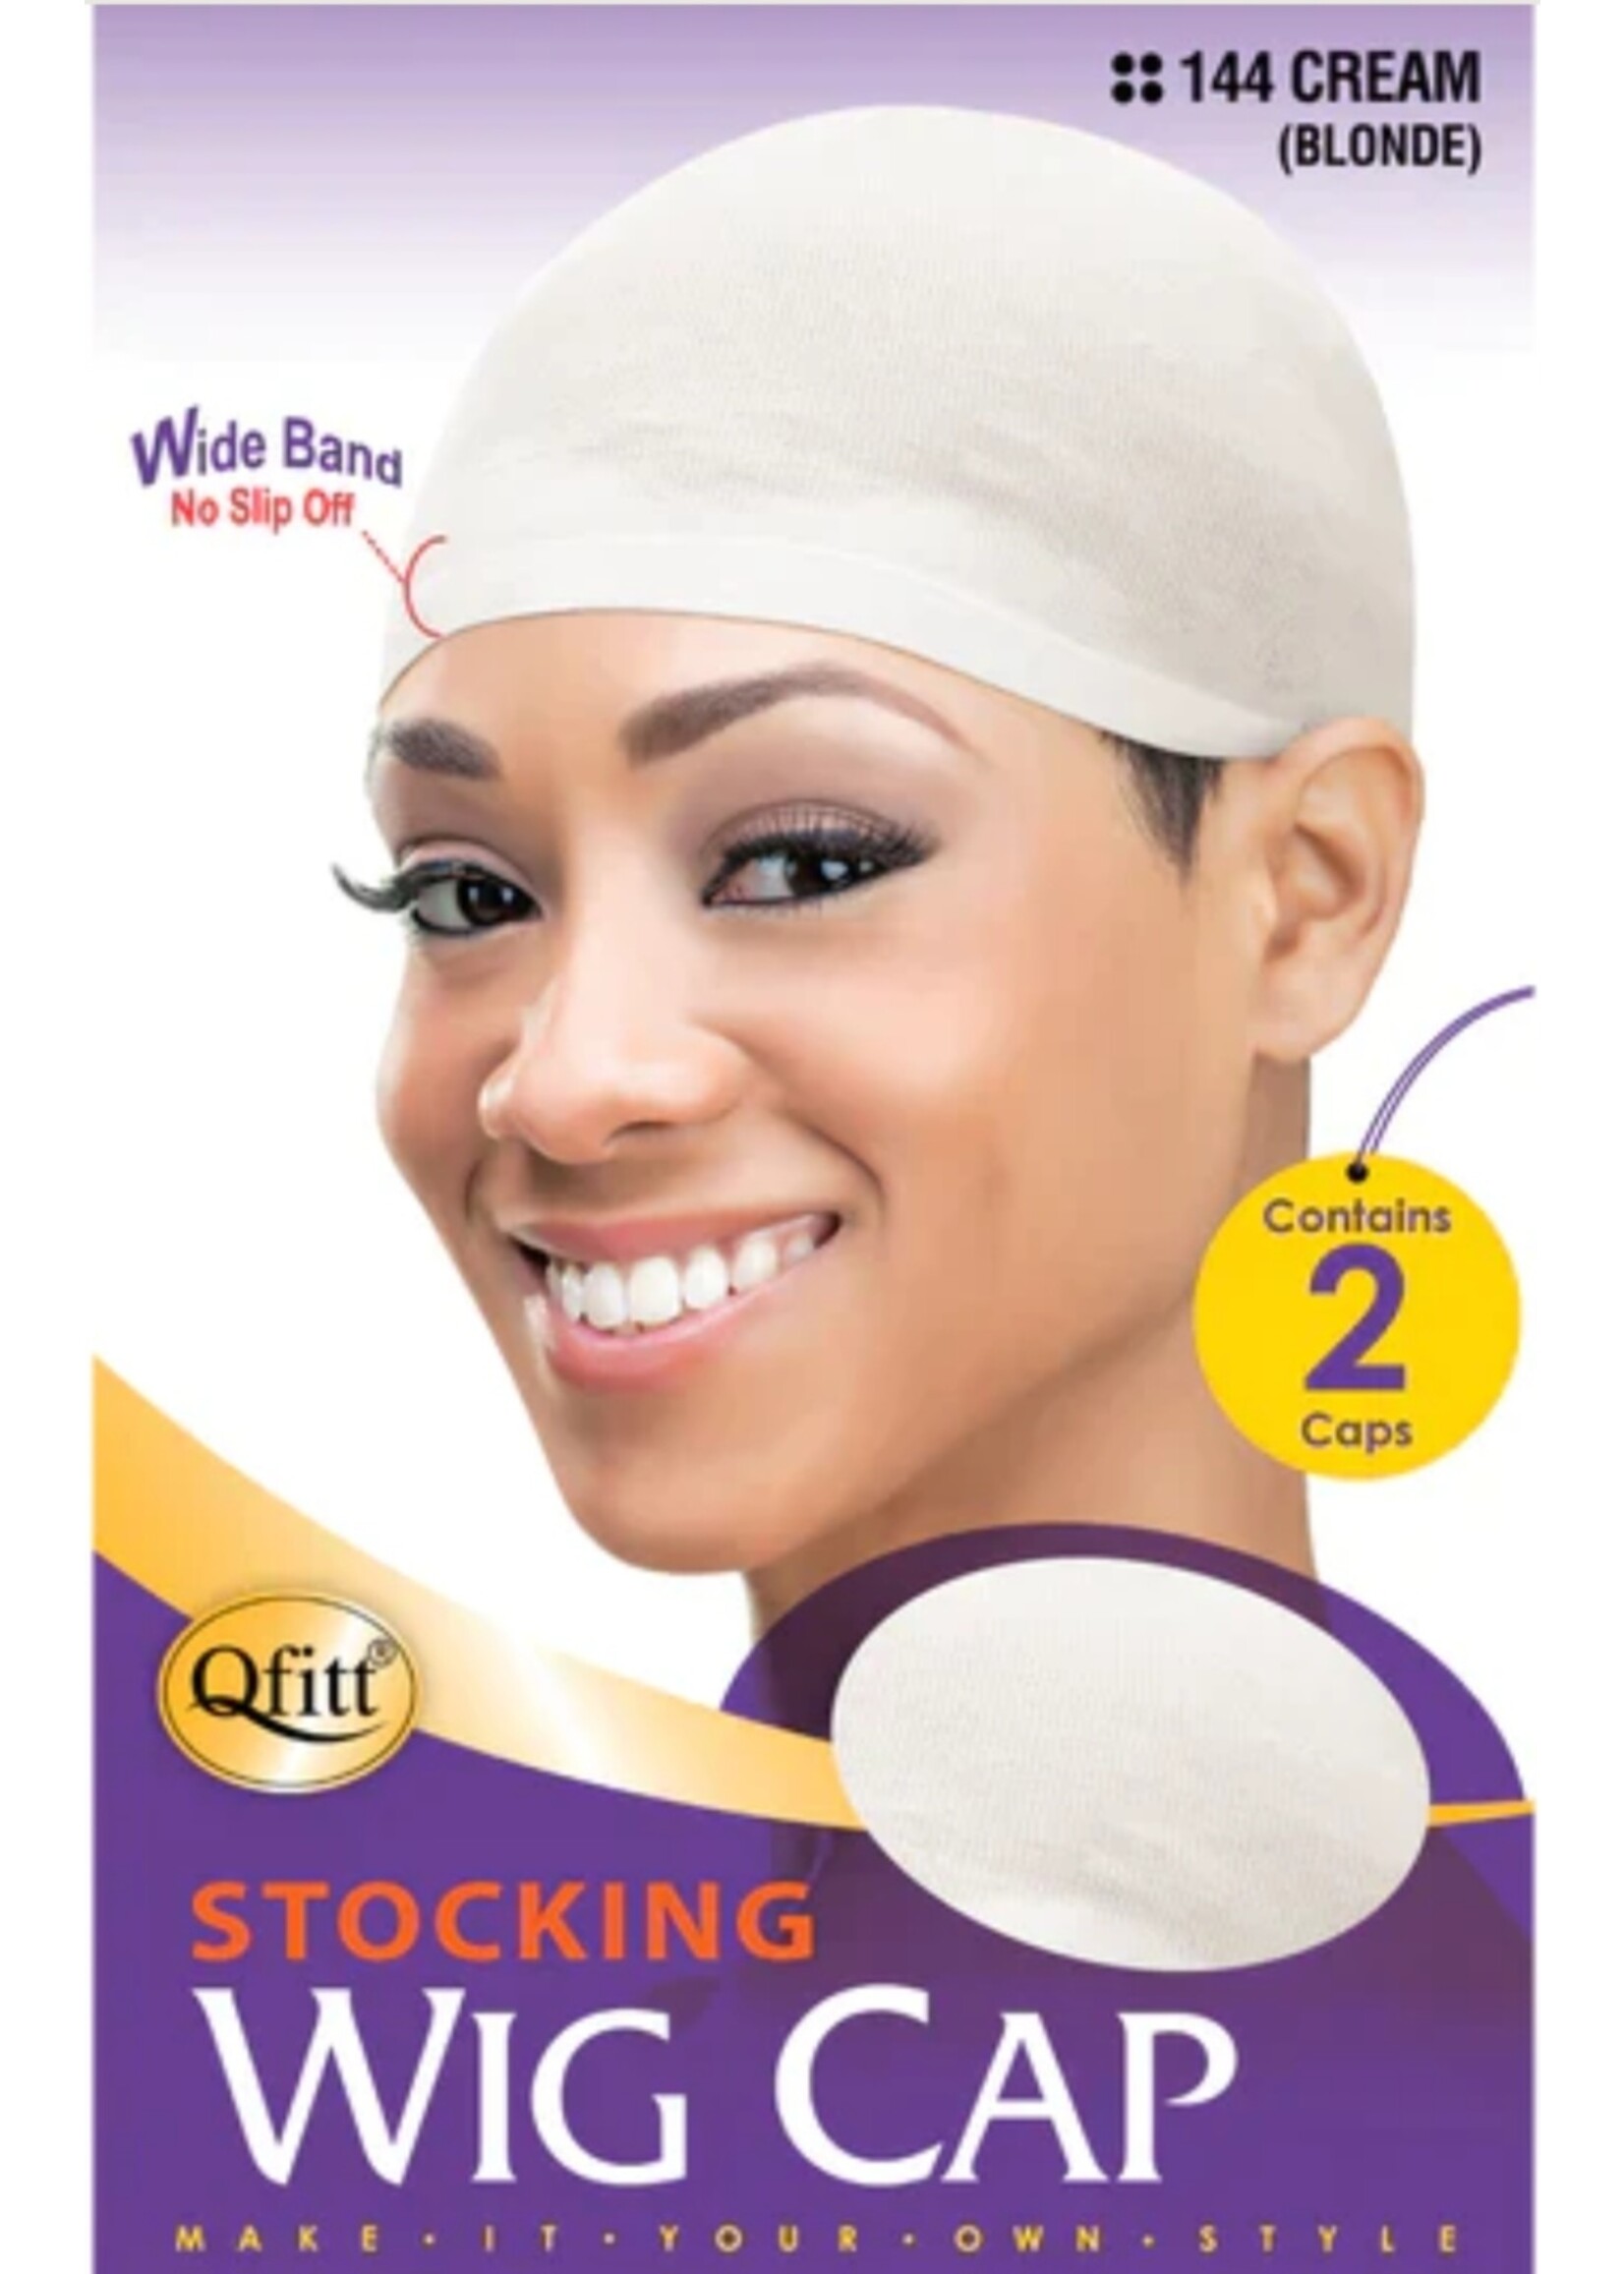 QFitt Wig Cap Cream #144